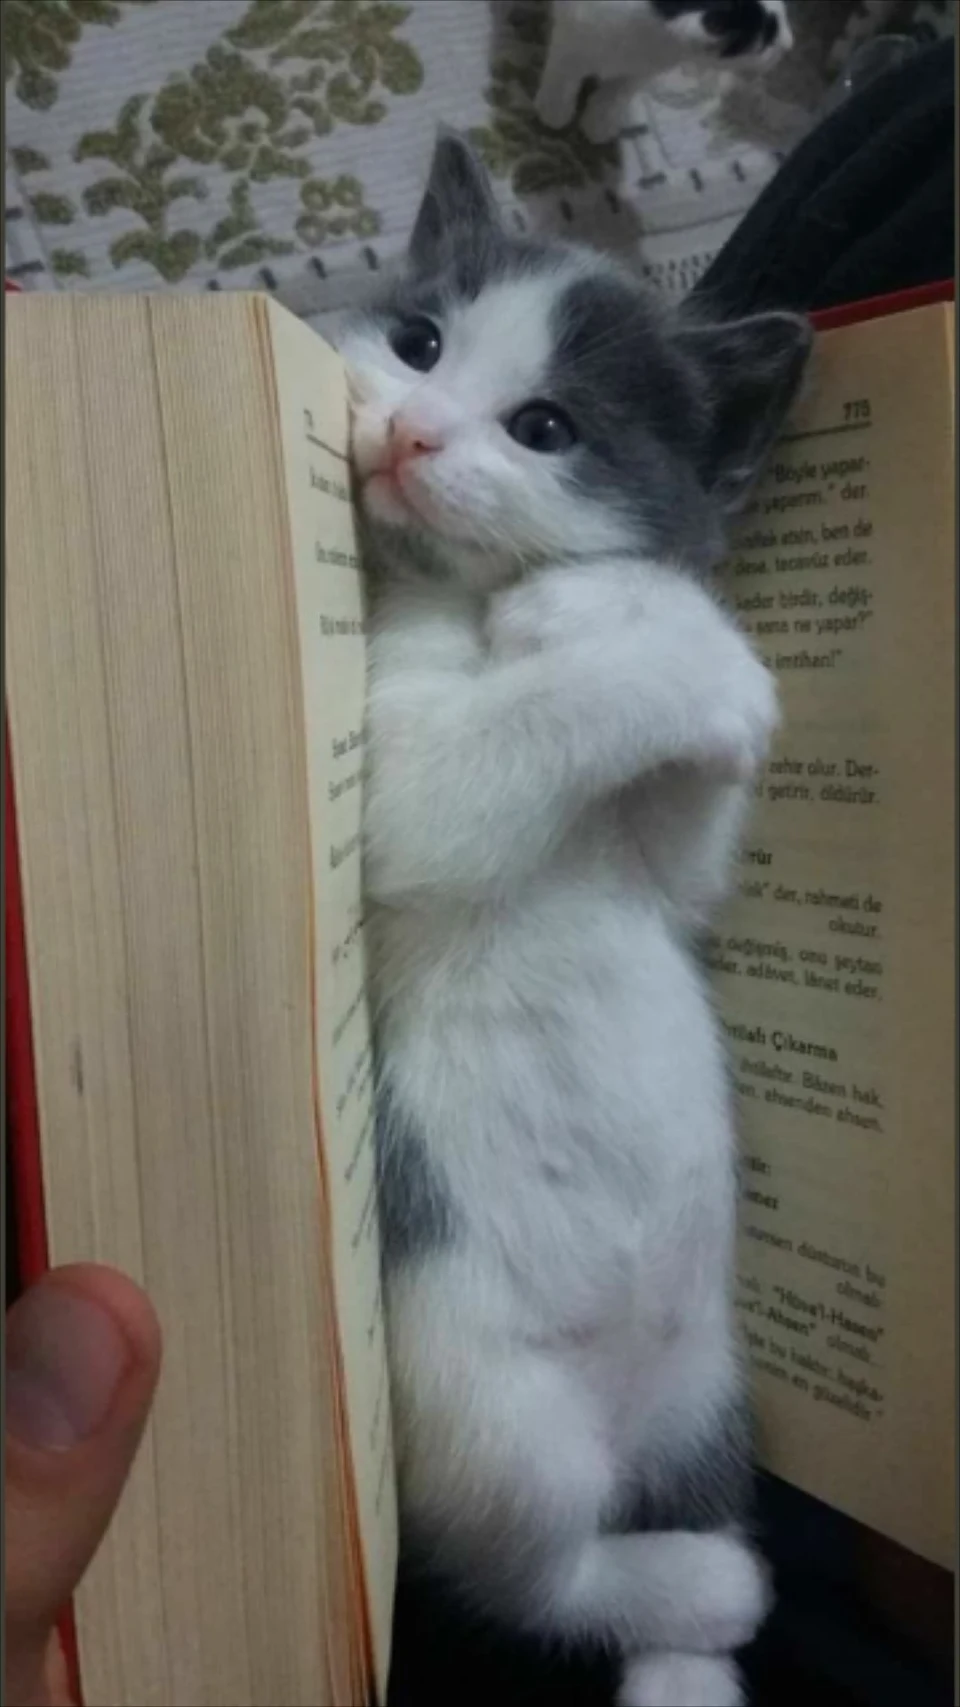 Cute bookmark